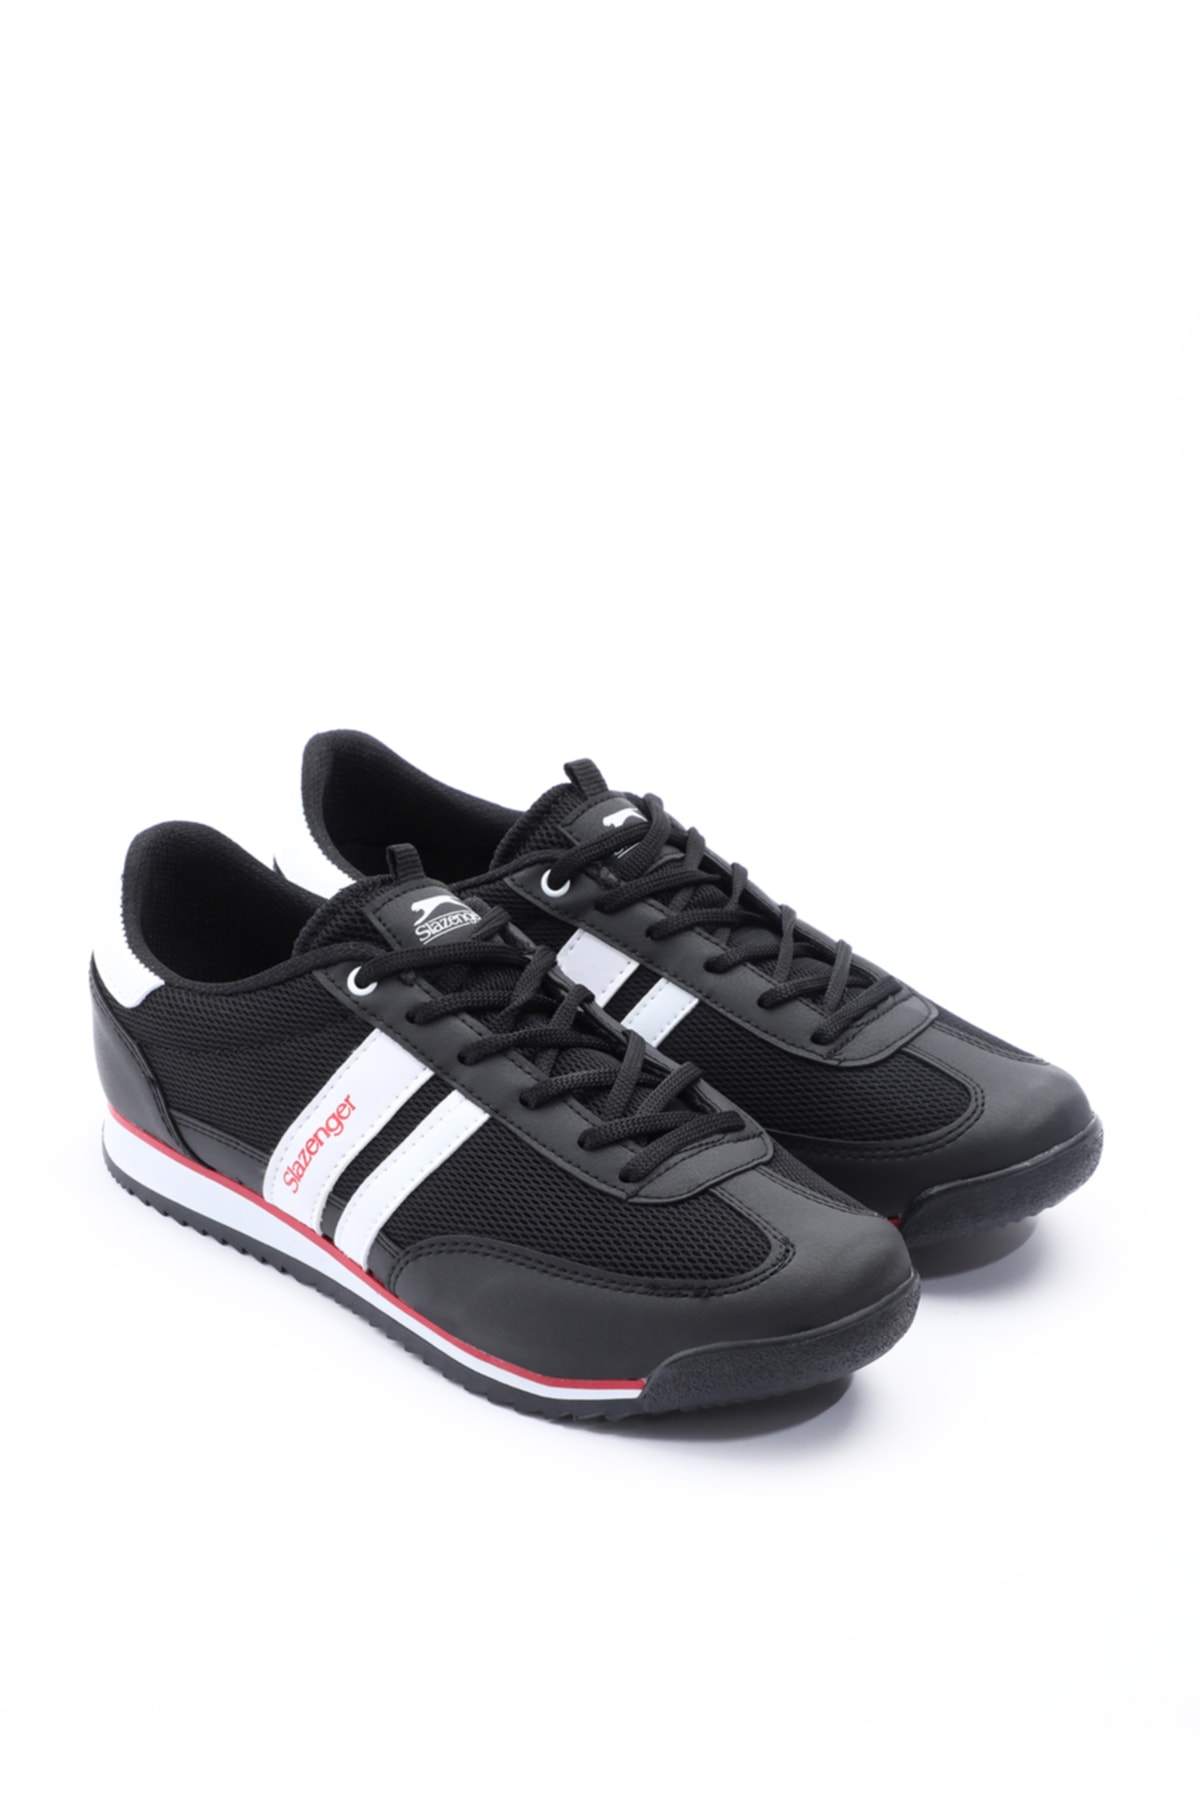 Slazenger Abbe Sneaker Mens Shoes Black / White